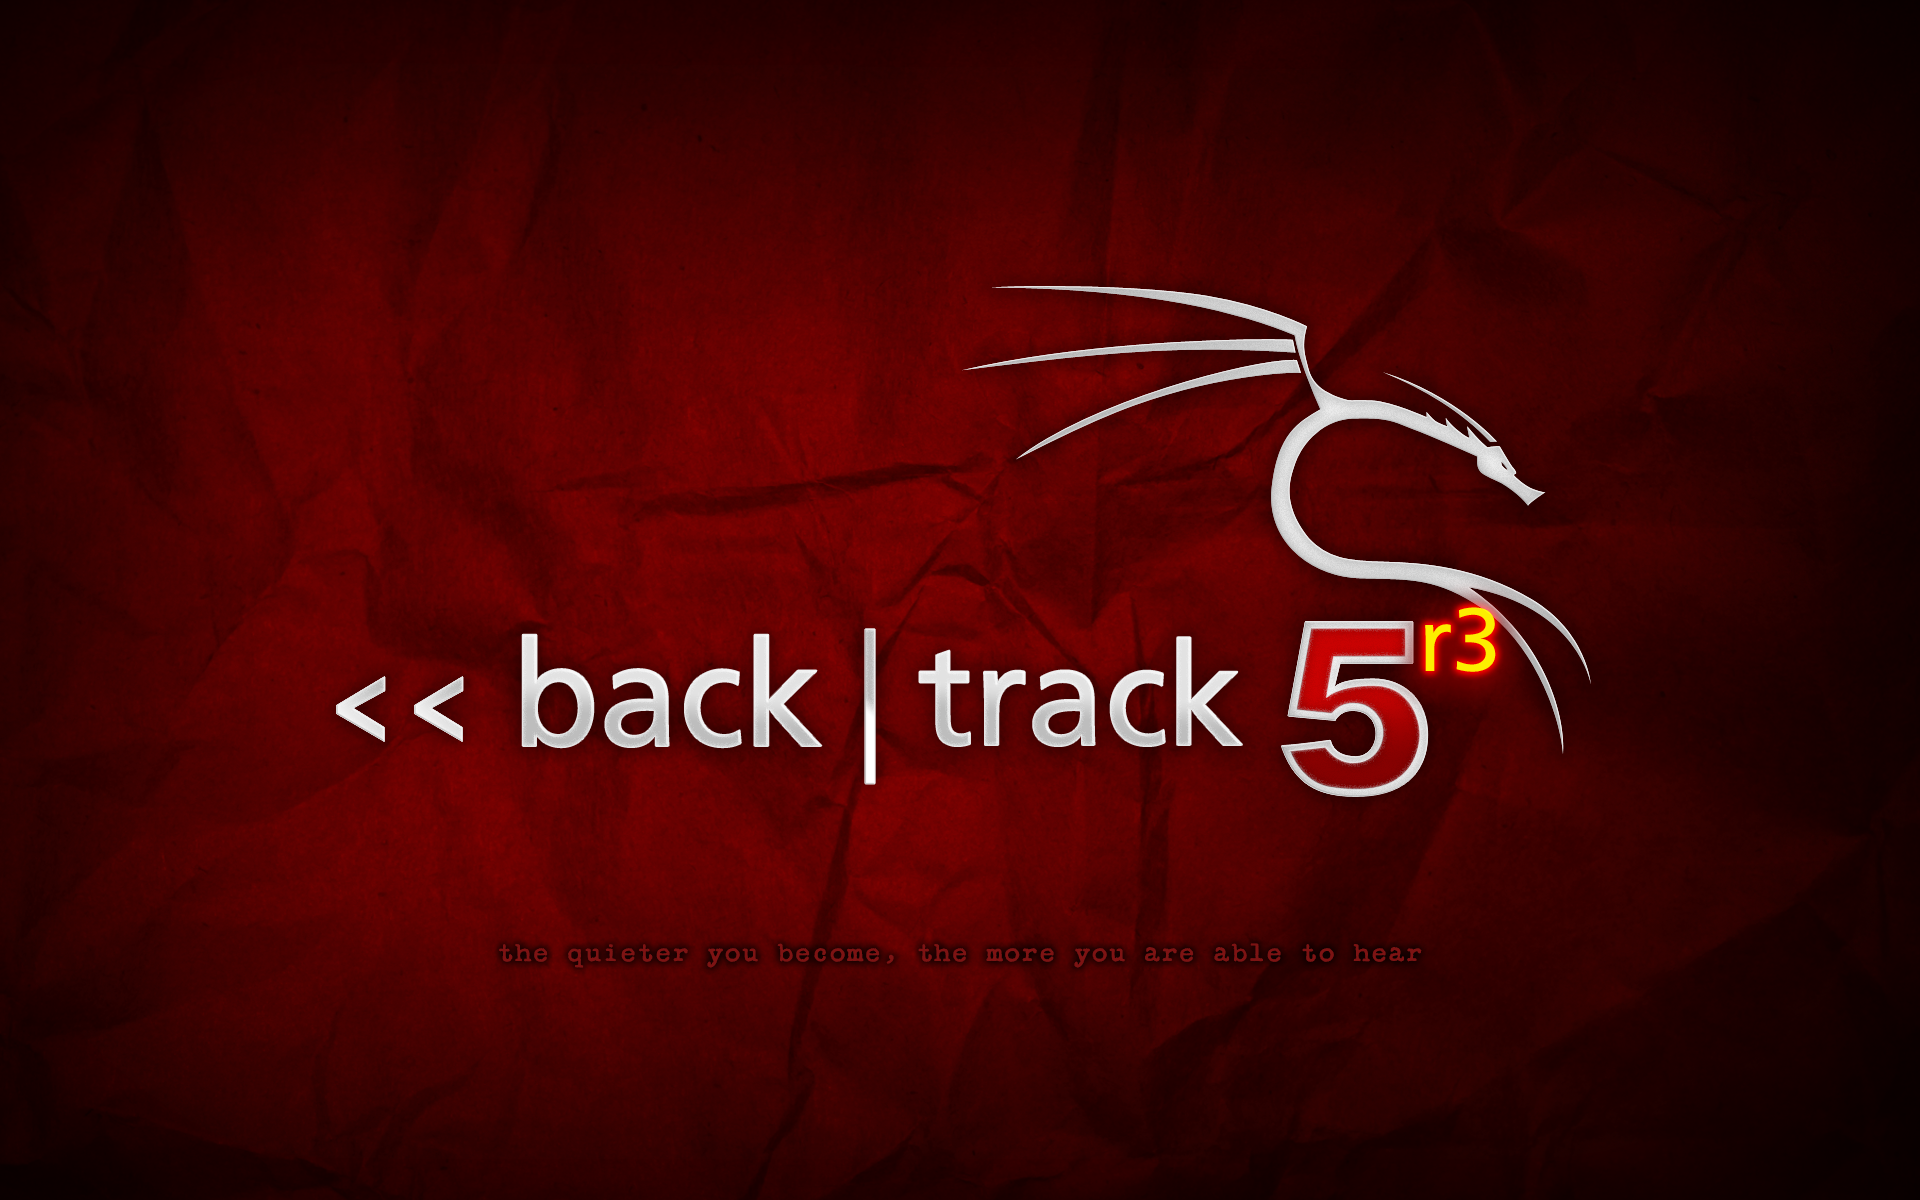 backtrack-5r3.png